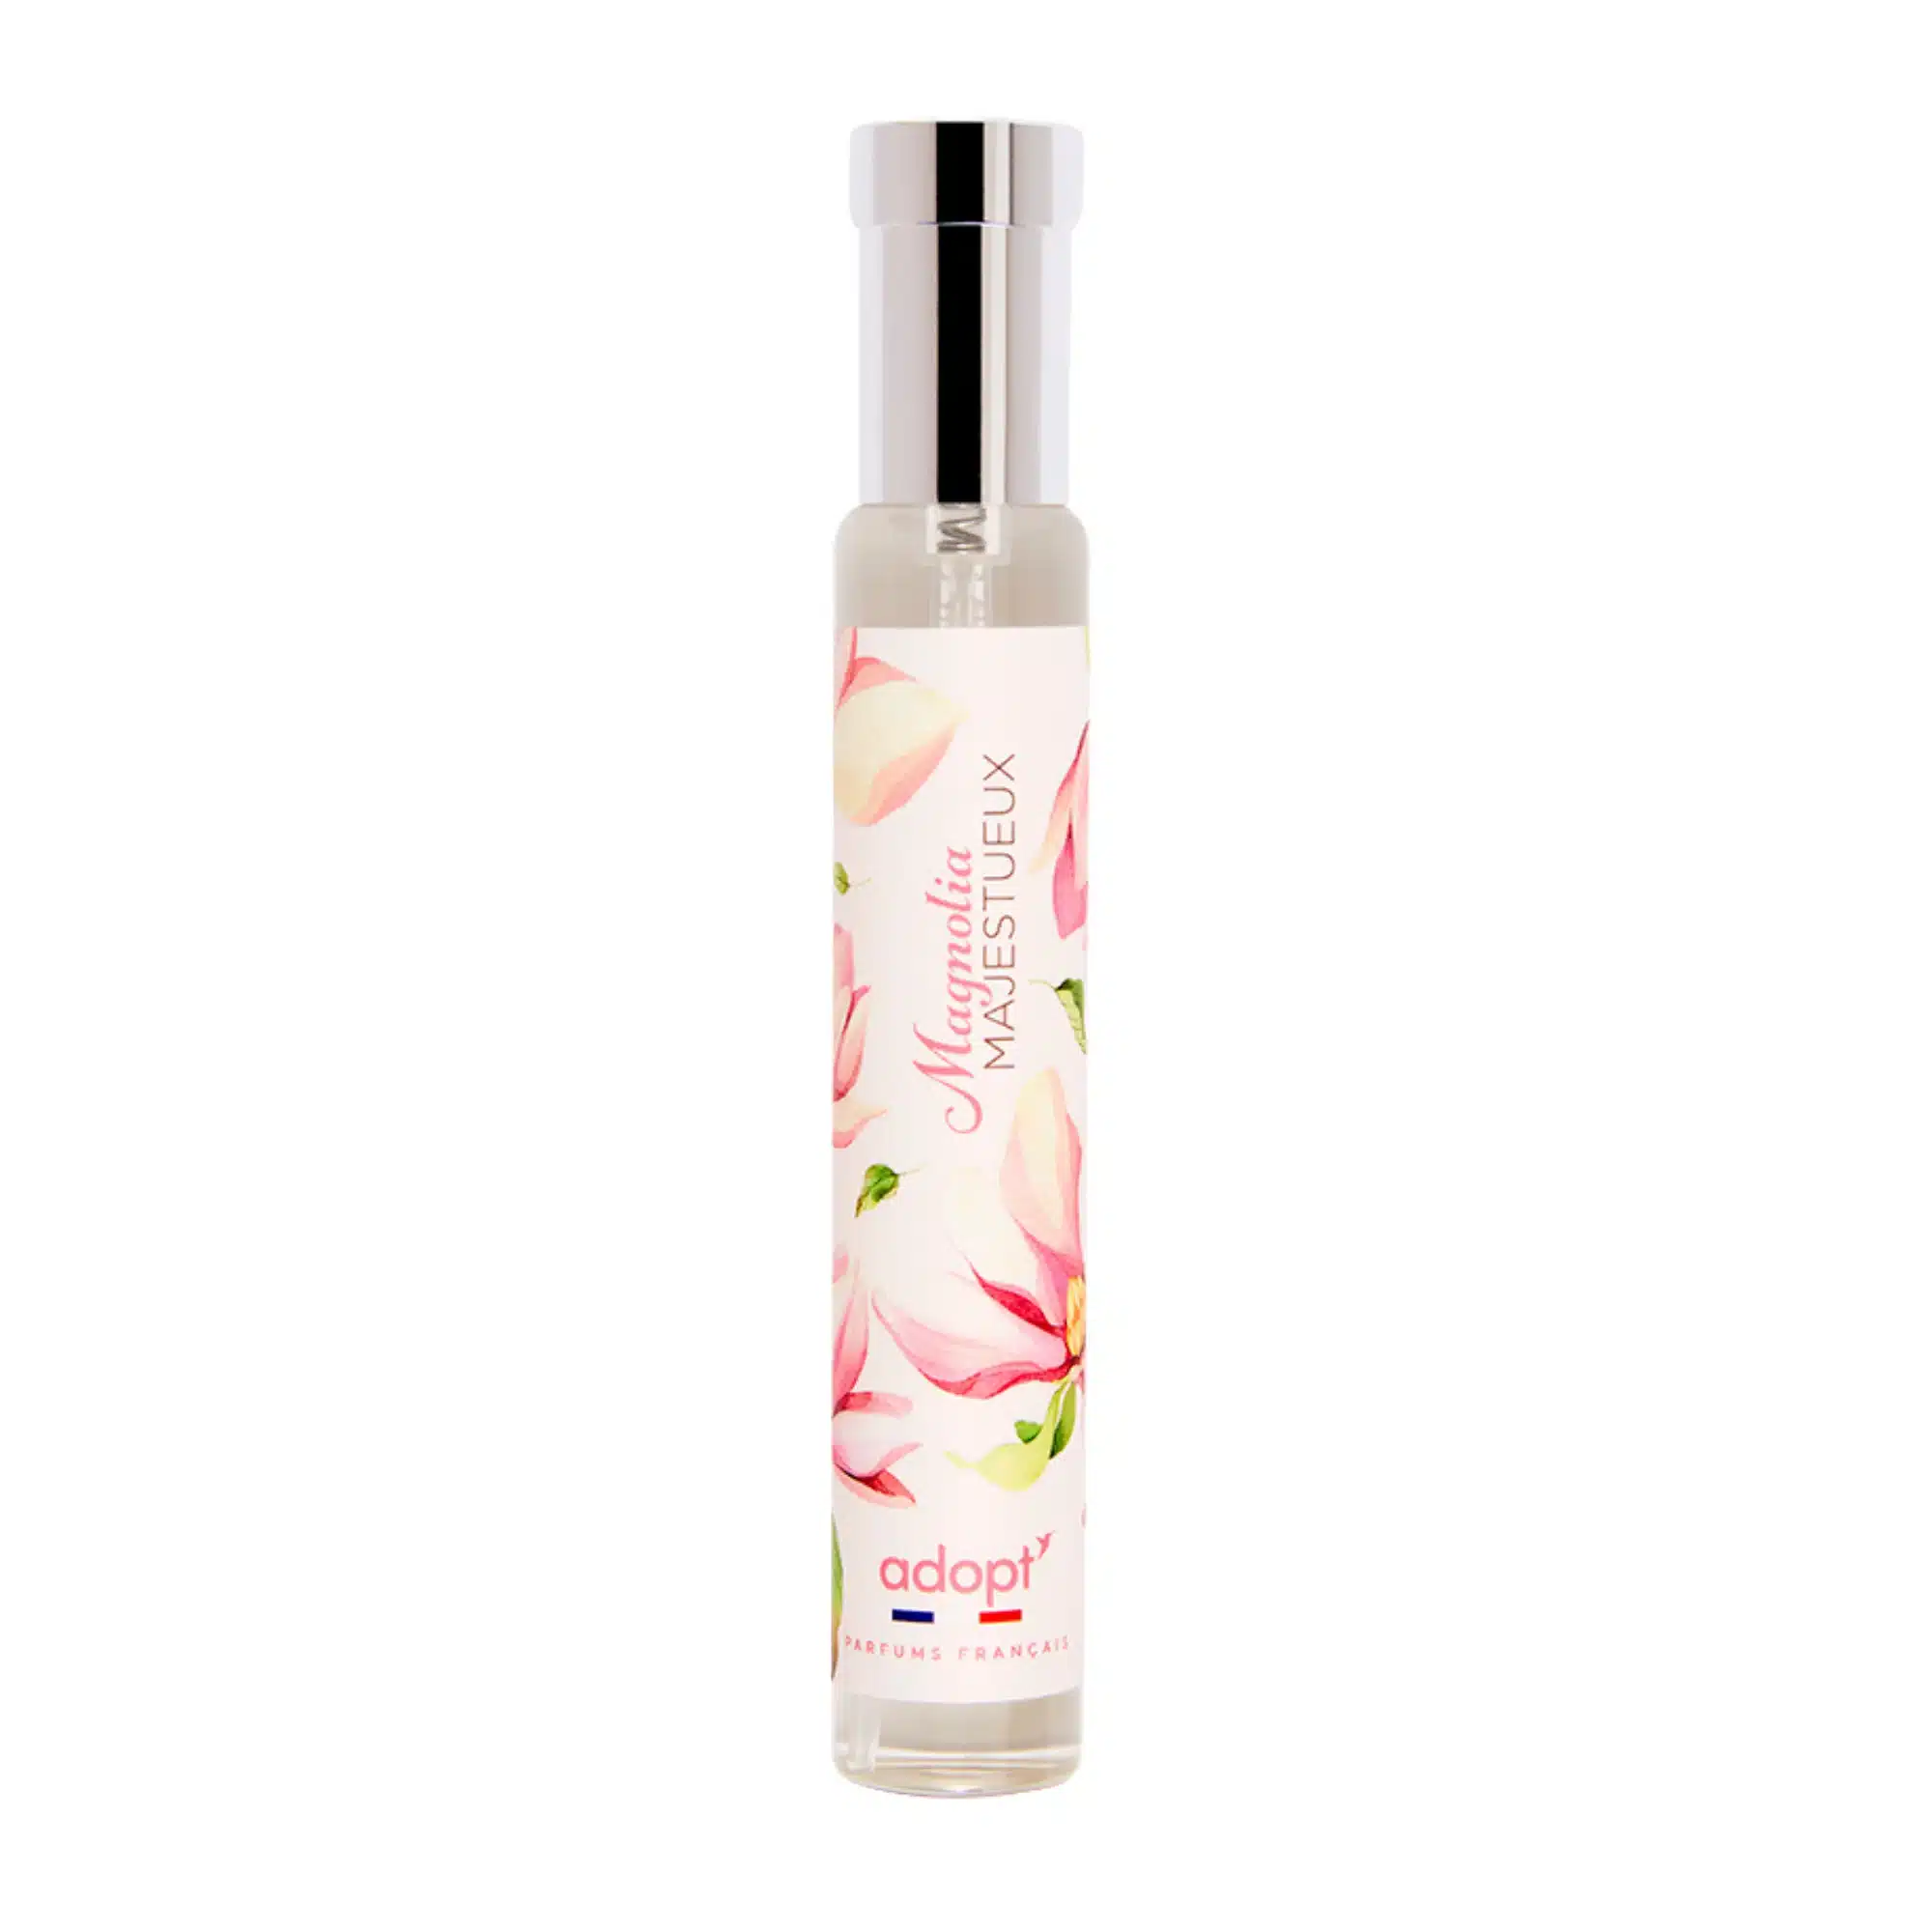 Adopt Parfum Magnolia Majestueux